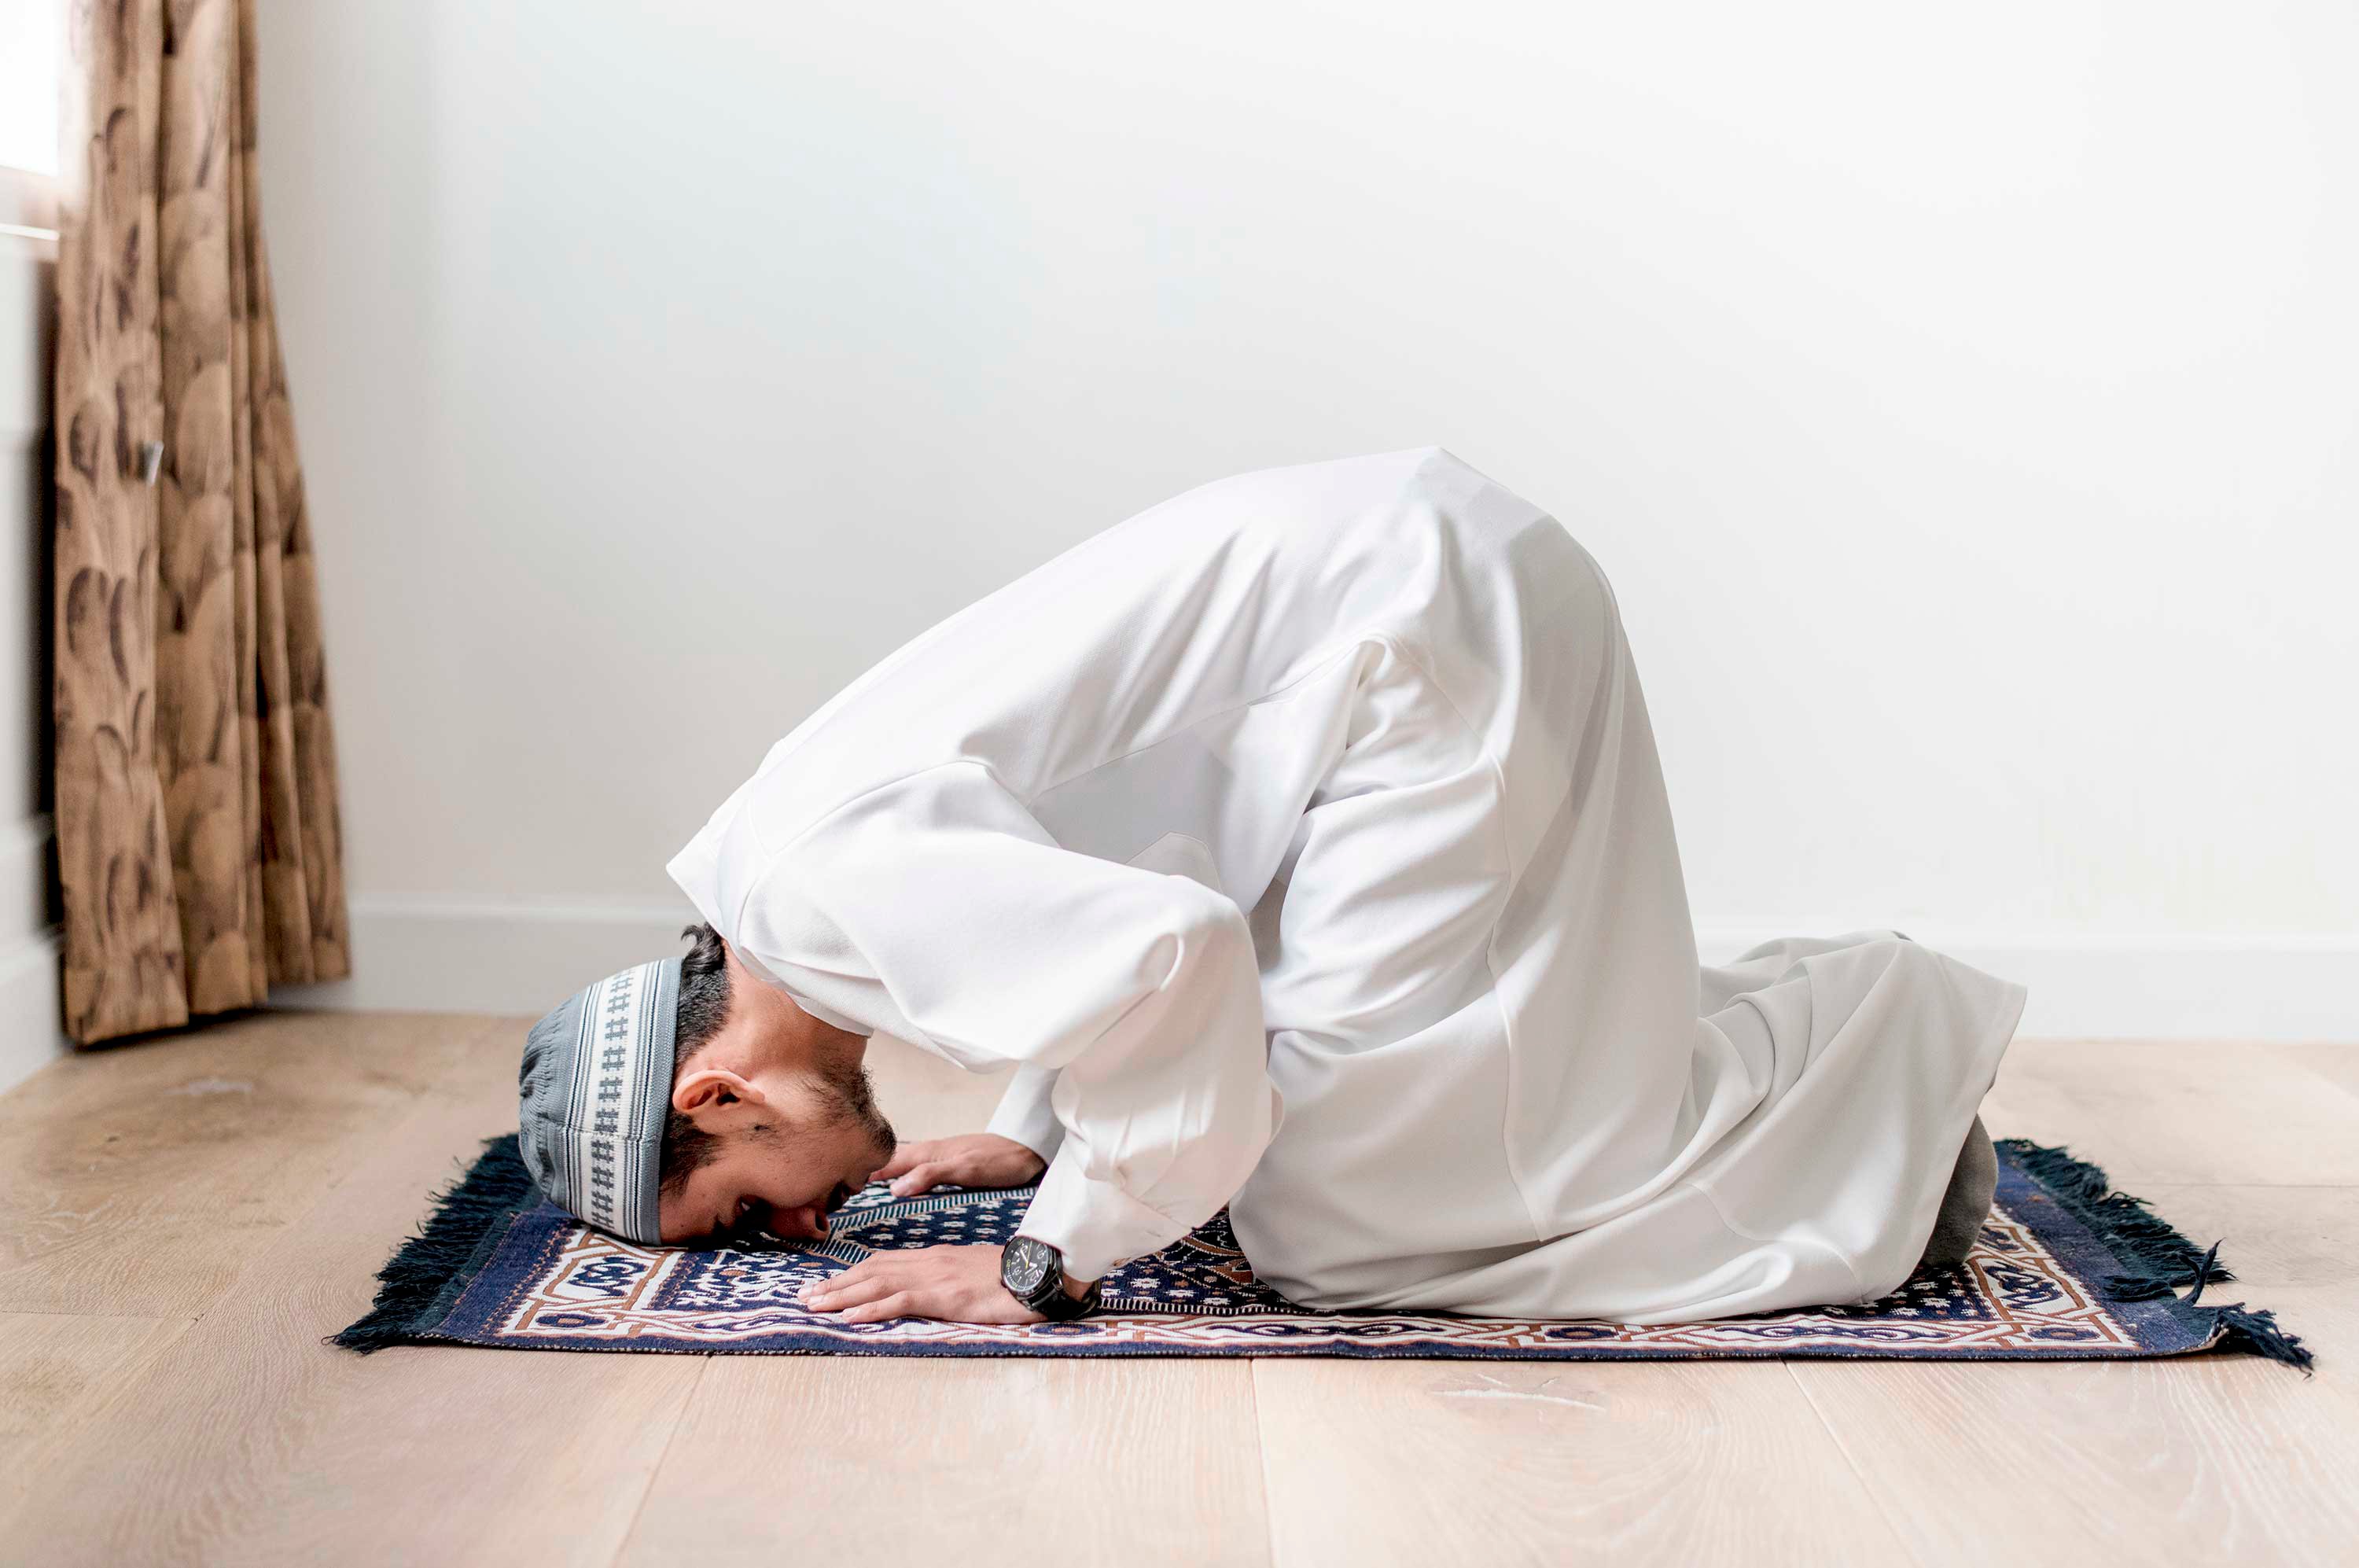 Намаз джамаатом имам. Мусульманин молится. Молитва мусульман. Что такое намаз у мусульман.